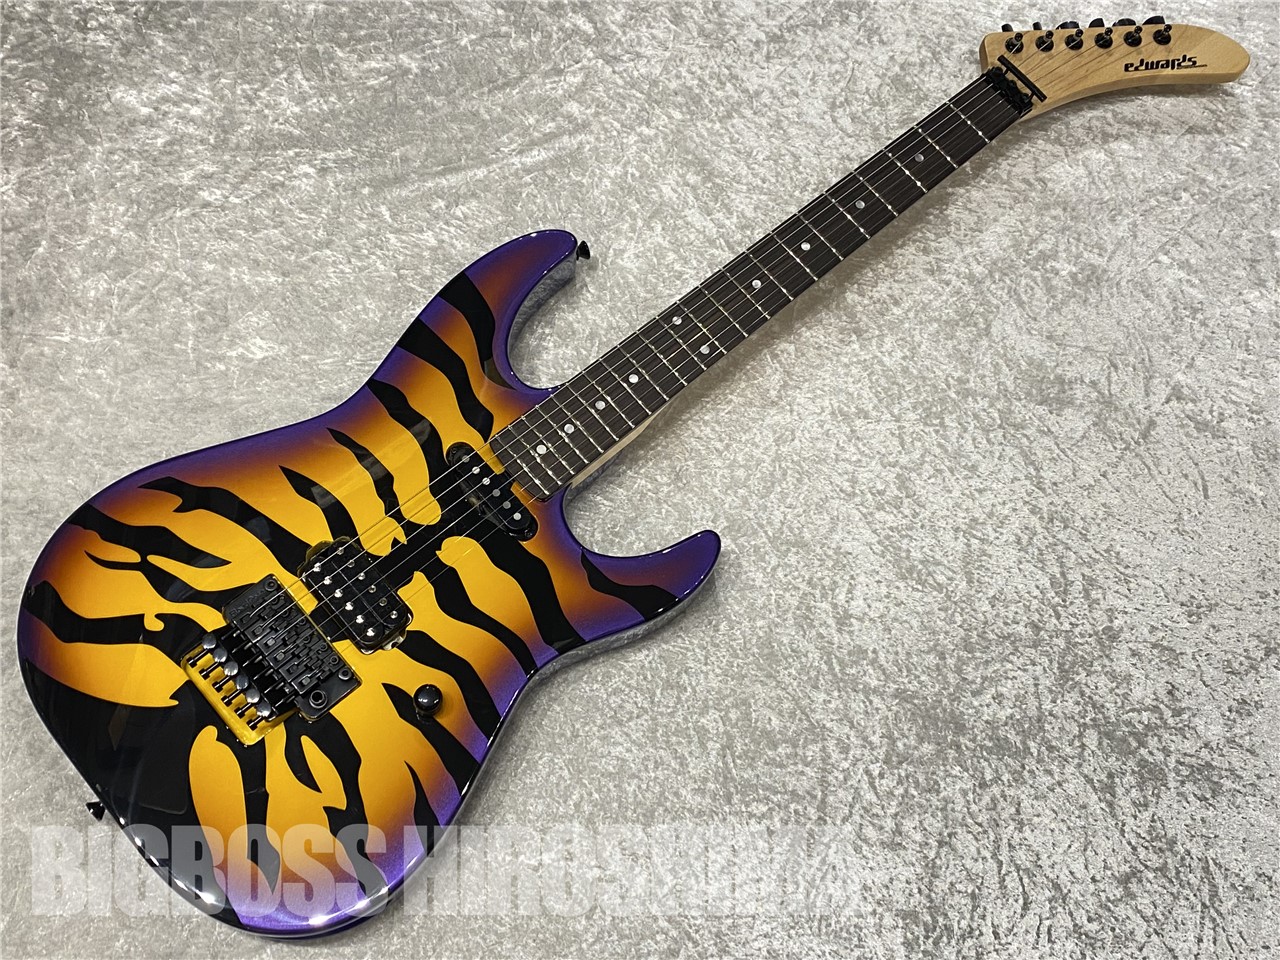 【即納可能】EDWARDS(エドワーズ) E-PURPLE TIGER (Purple Sunburst Tiger Graphic) (DOKKEN/George Lynchモデル) 広島店